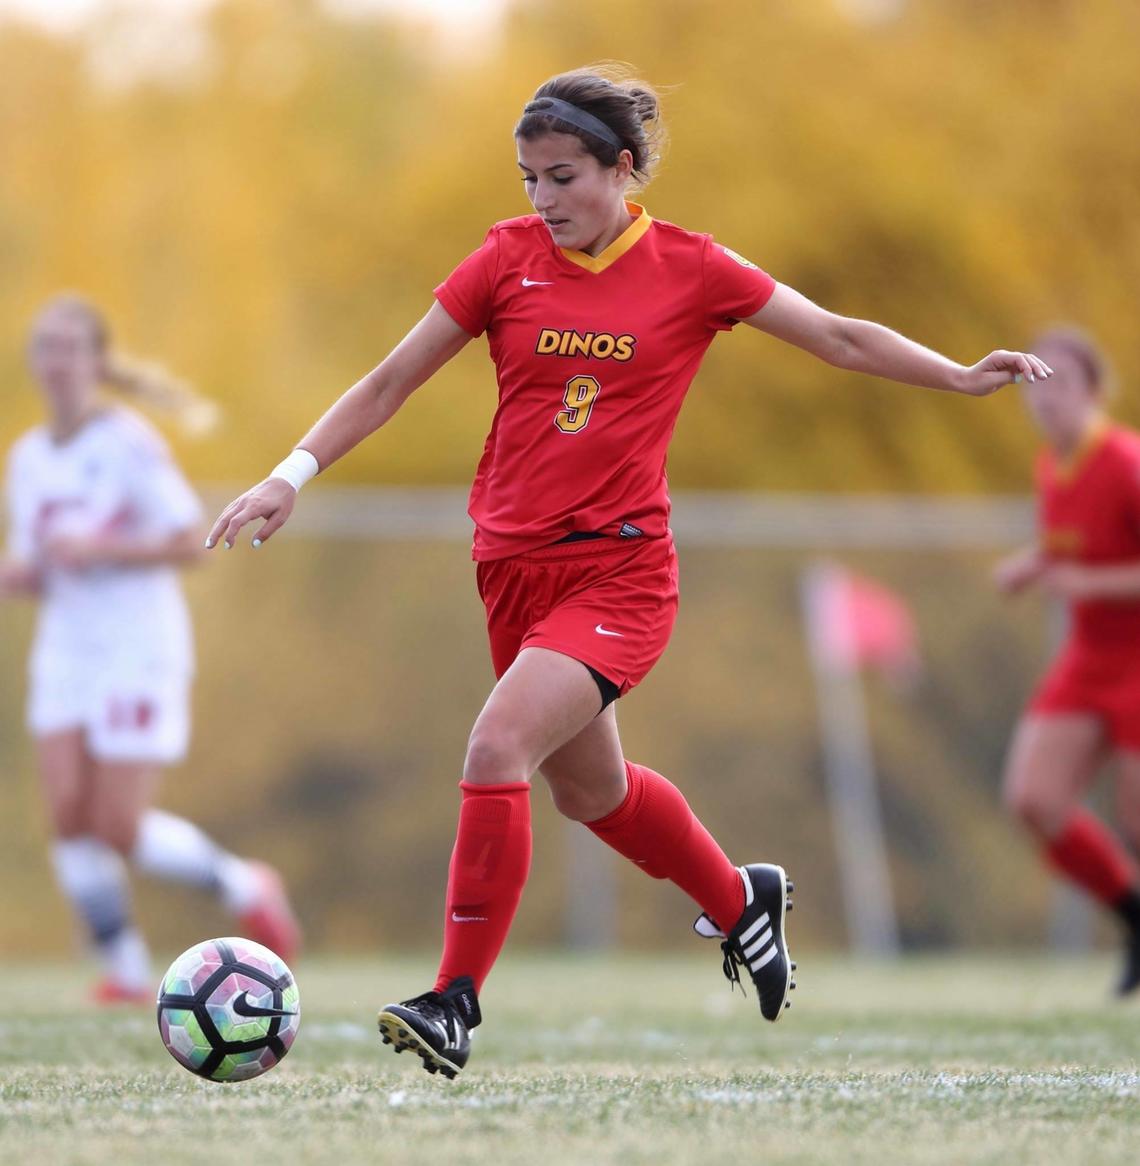 Kayla Kreutzer chases a soccer ball